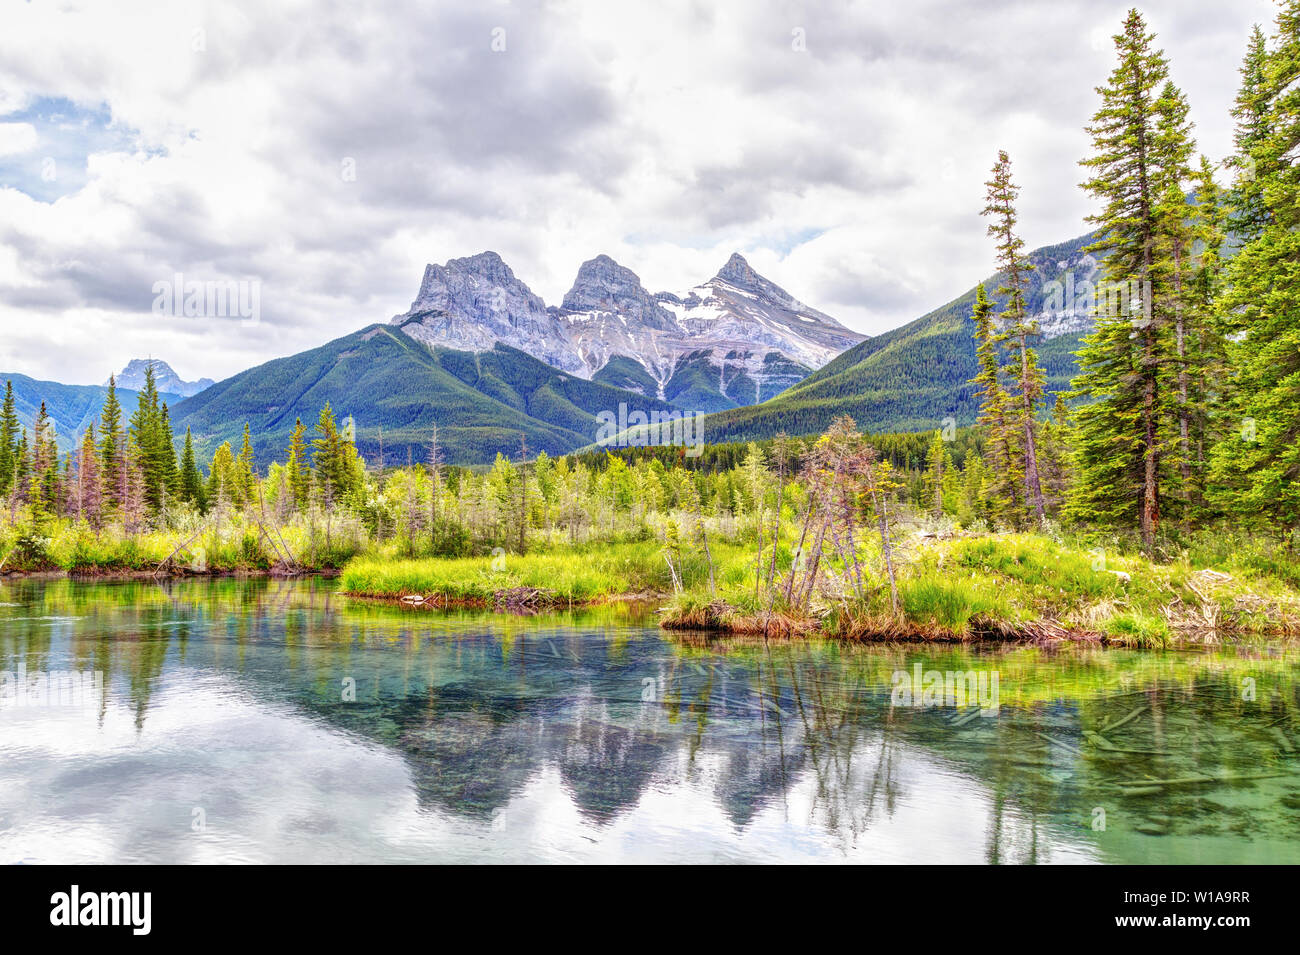 Canmore célèbre Trois Sœurs des pics de montagne et leurs réflexions sur la rivière Bow dans le sud de la gamme Banff Canadian Rockies sur un ciel nuageux S Banque D'Images